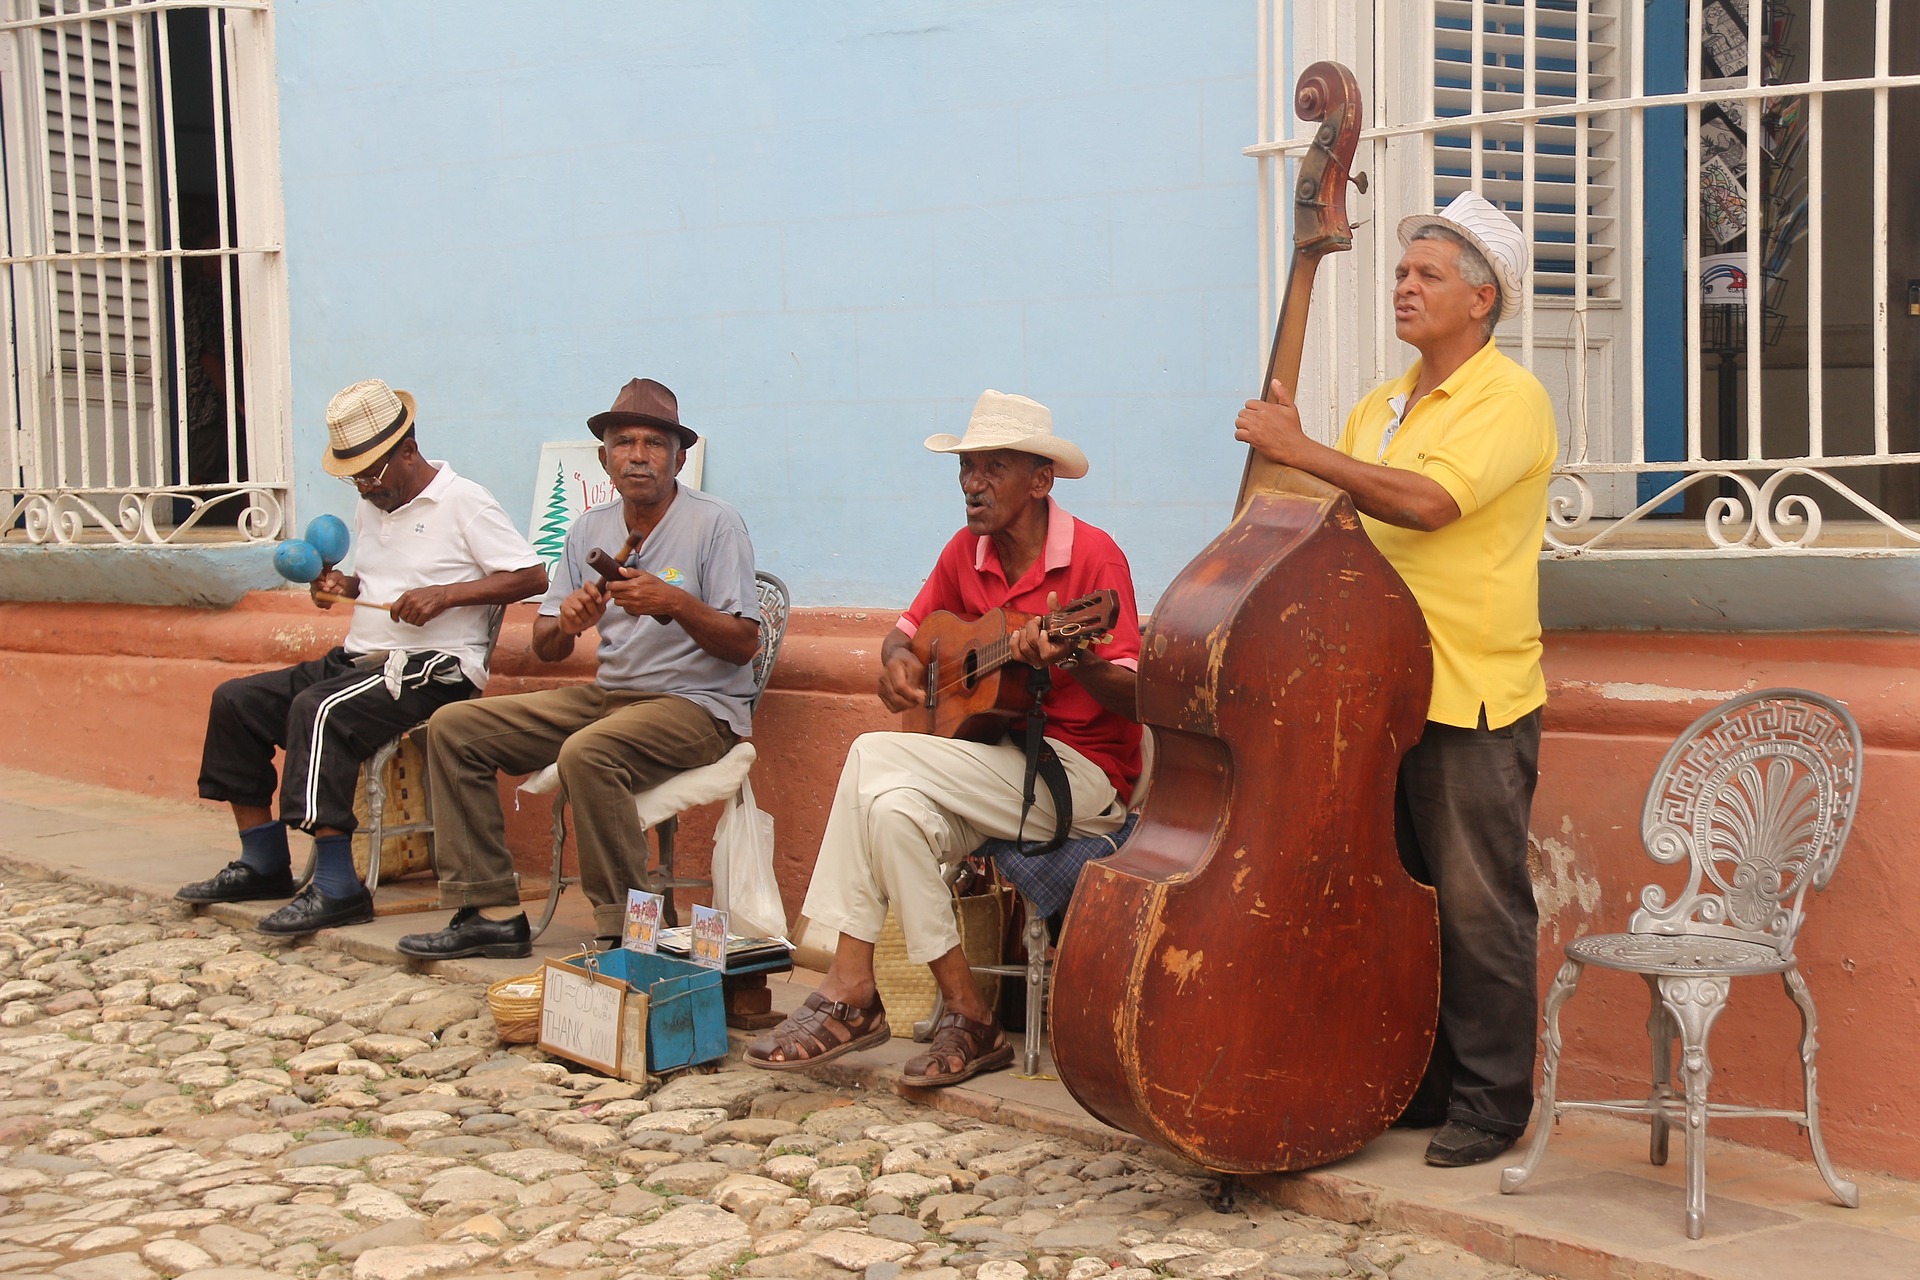 Salsa en la calle, Trinidad, Cuba (Foto: Rav_ CC0 in Pixabay)